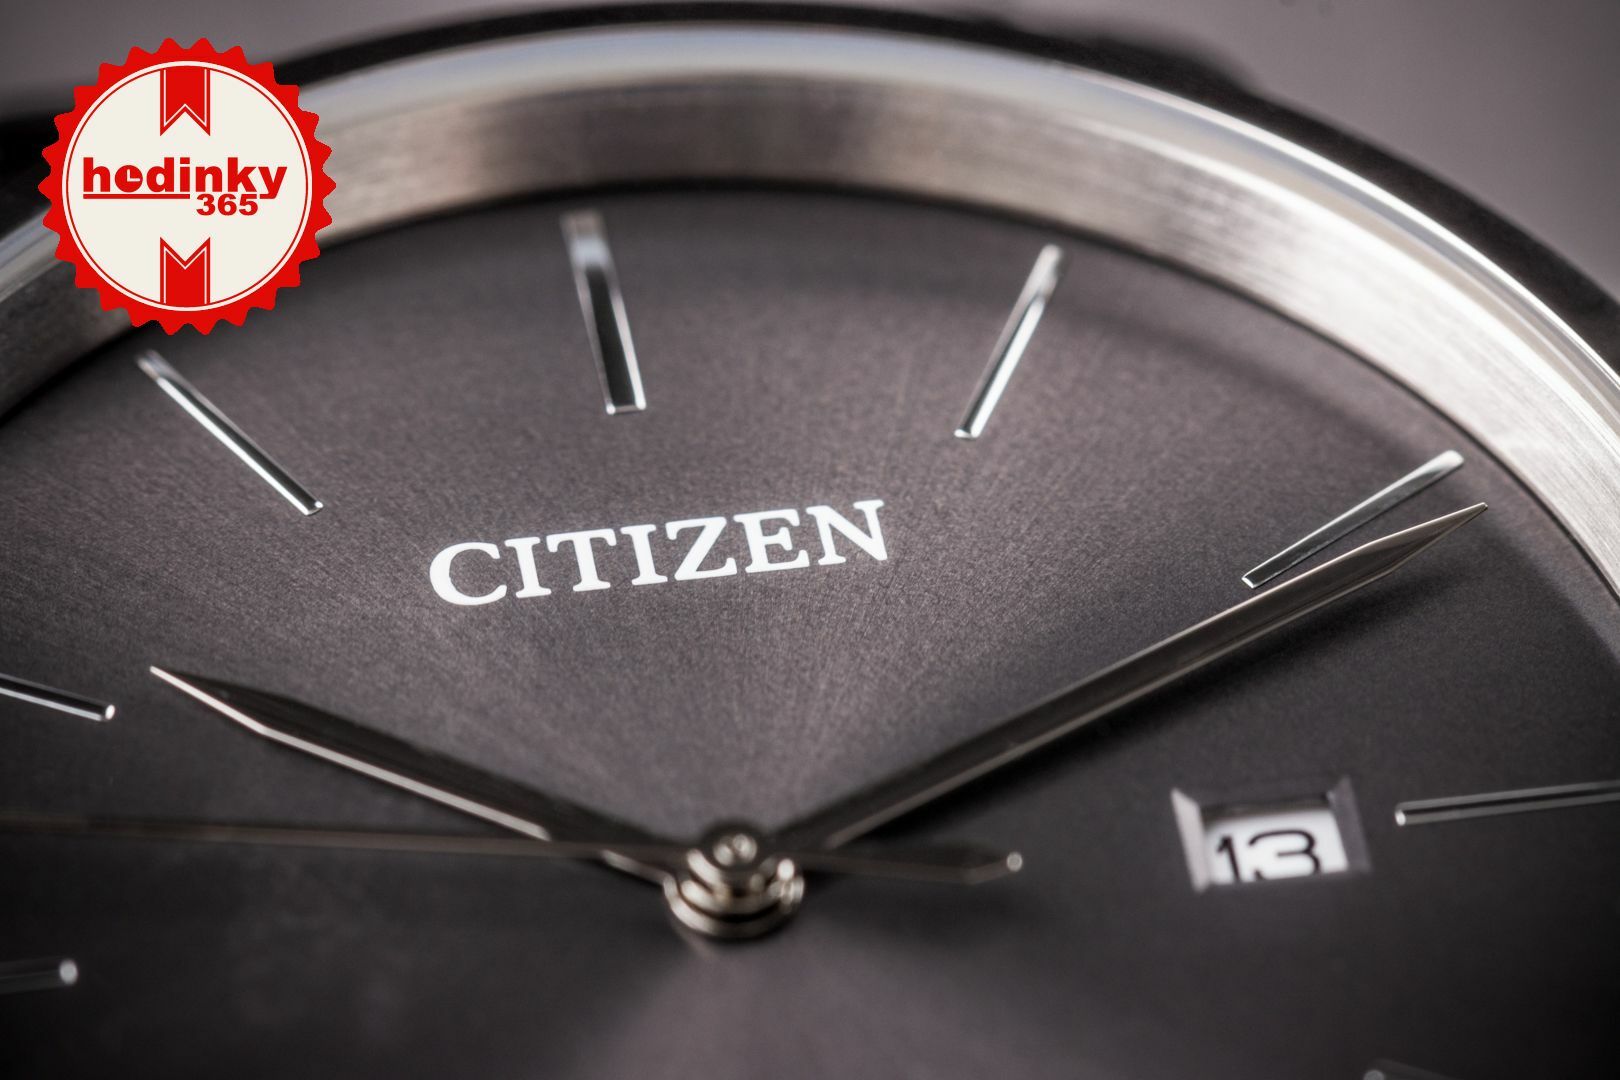 Citizen Basic Quartz BI5070-57H